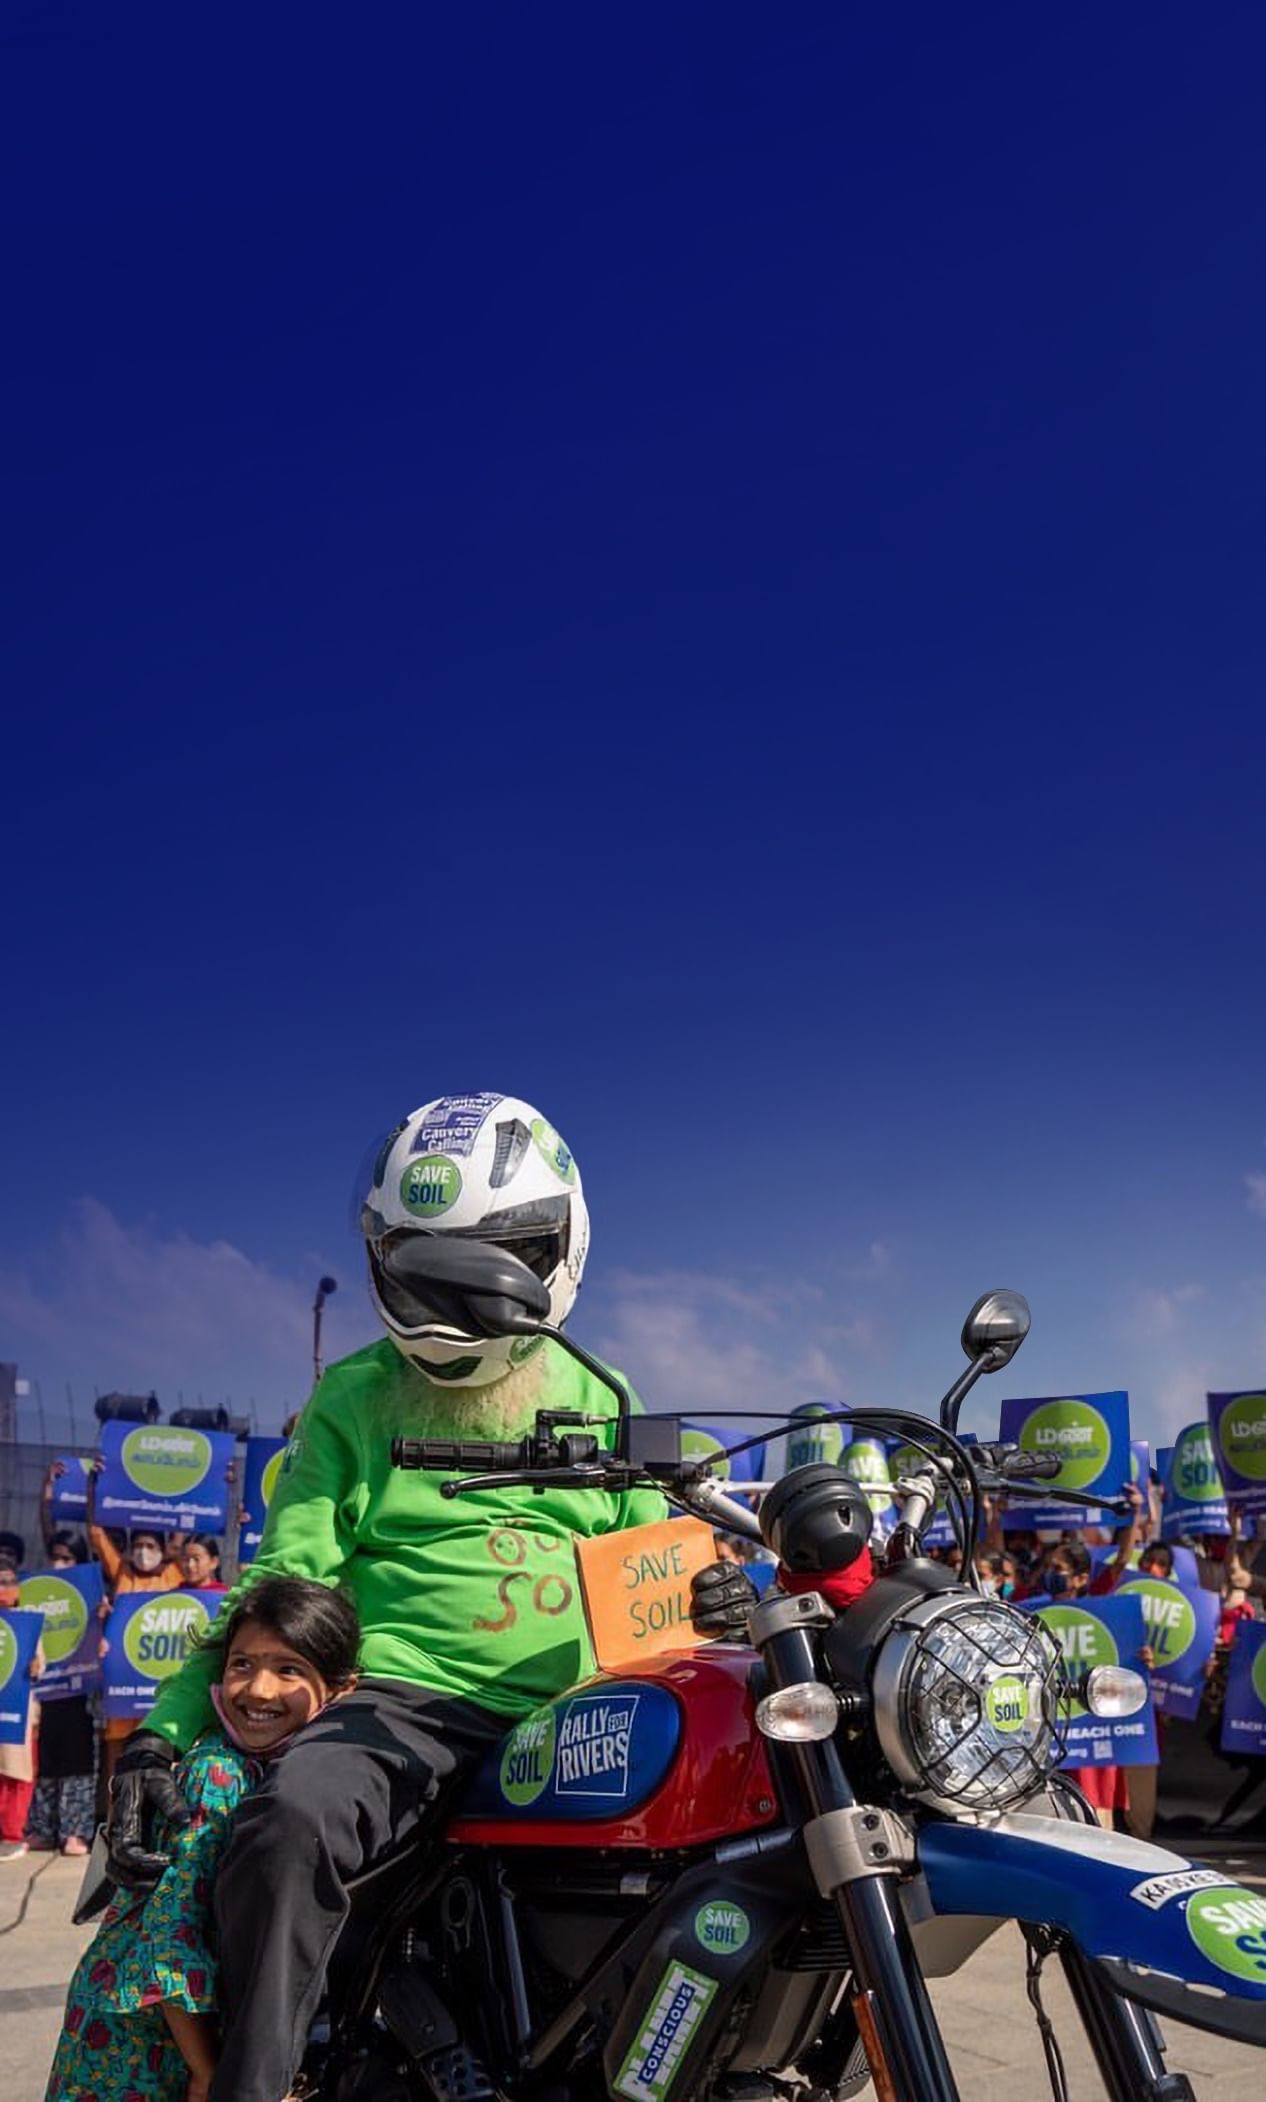 Sadhguru uz motocikla ar zīmi "Glābsim Augsni" (Save Soil) kopā ar bērnu